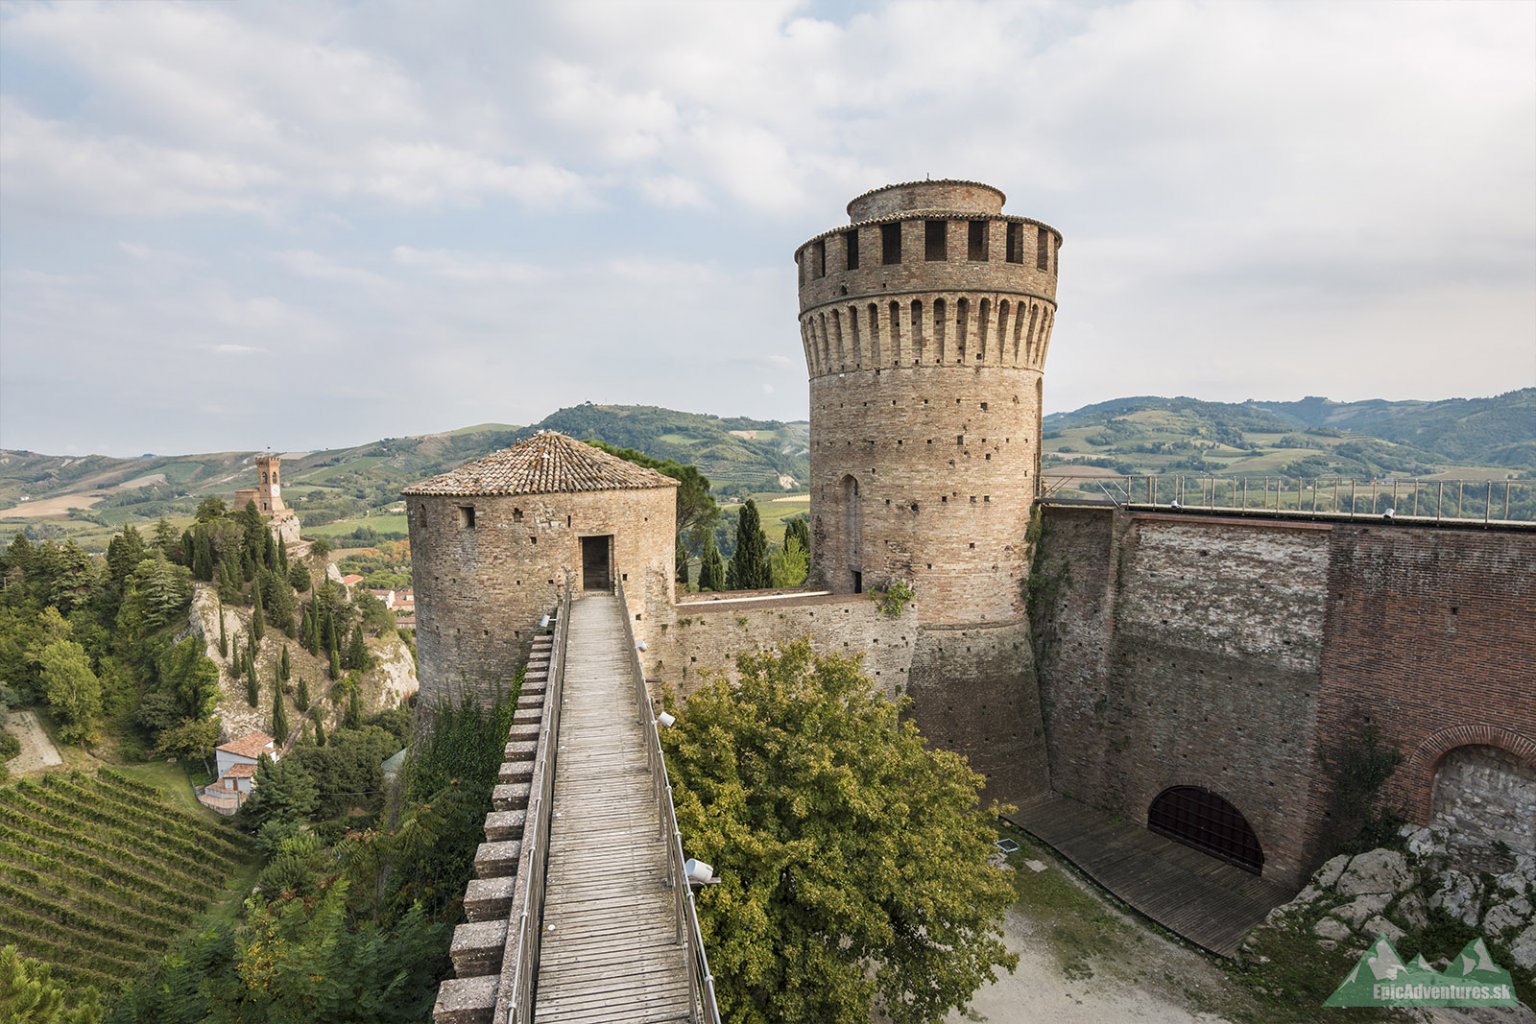 Výhľad z hradieb do jadra pevnosti. V pozadí hodinová veža Torre dell'Orologio